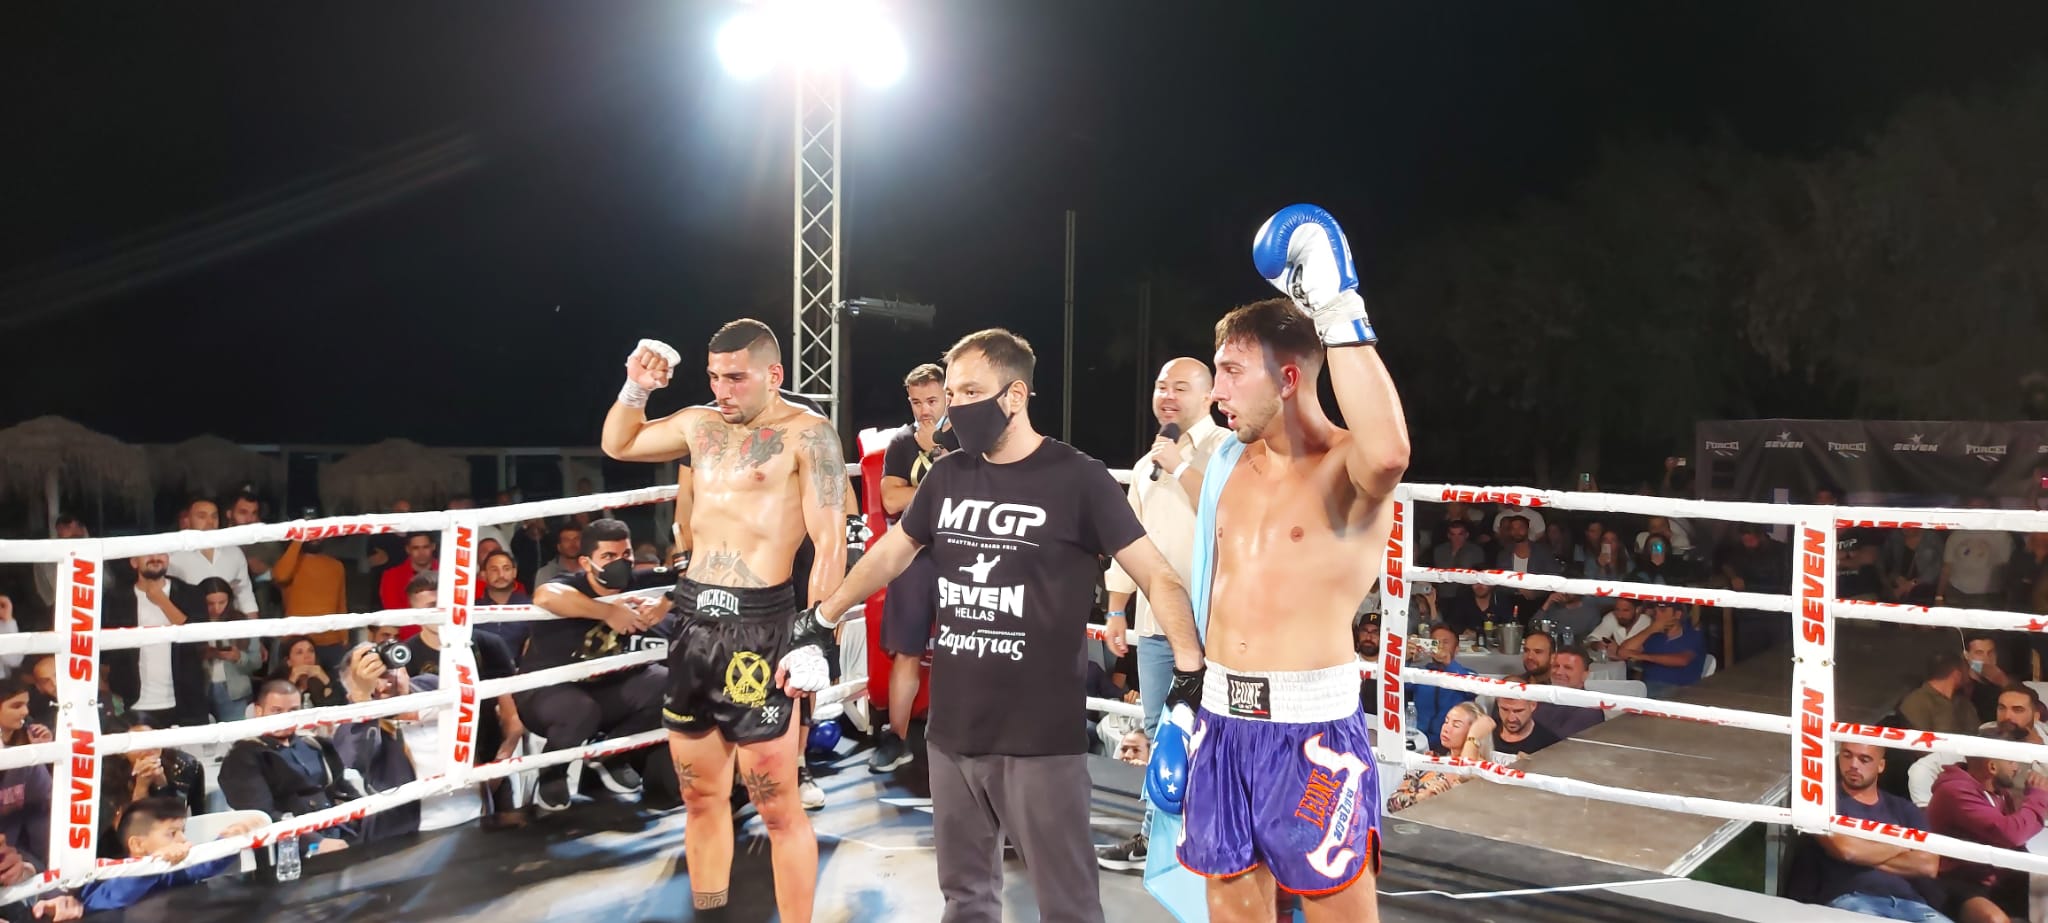 Kickboxing, trasferta in Grecia per il materano Andrulli con tiro mancino dei giudici durante il match valevole per il Titolo Mondiale Gran Prix